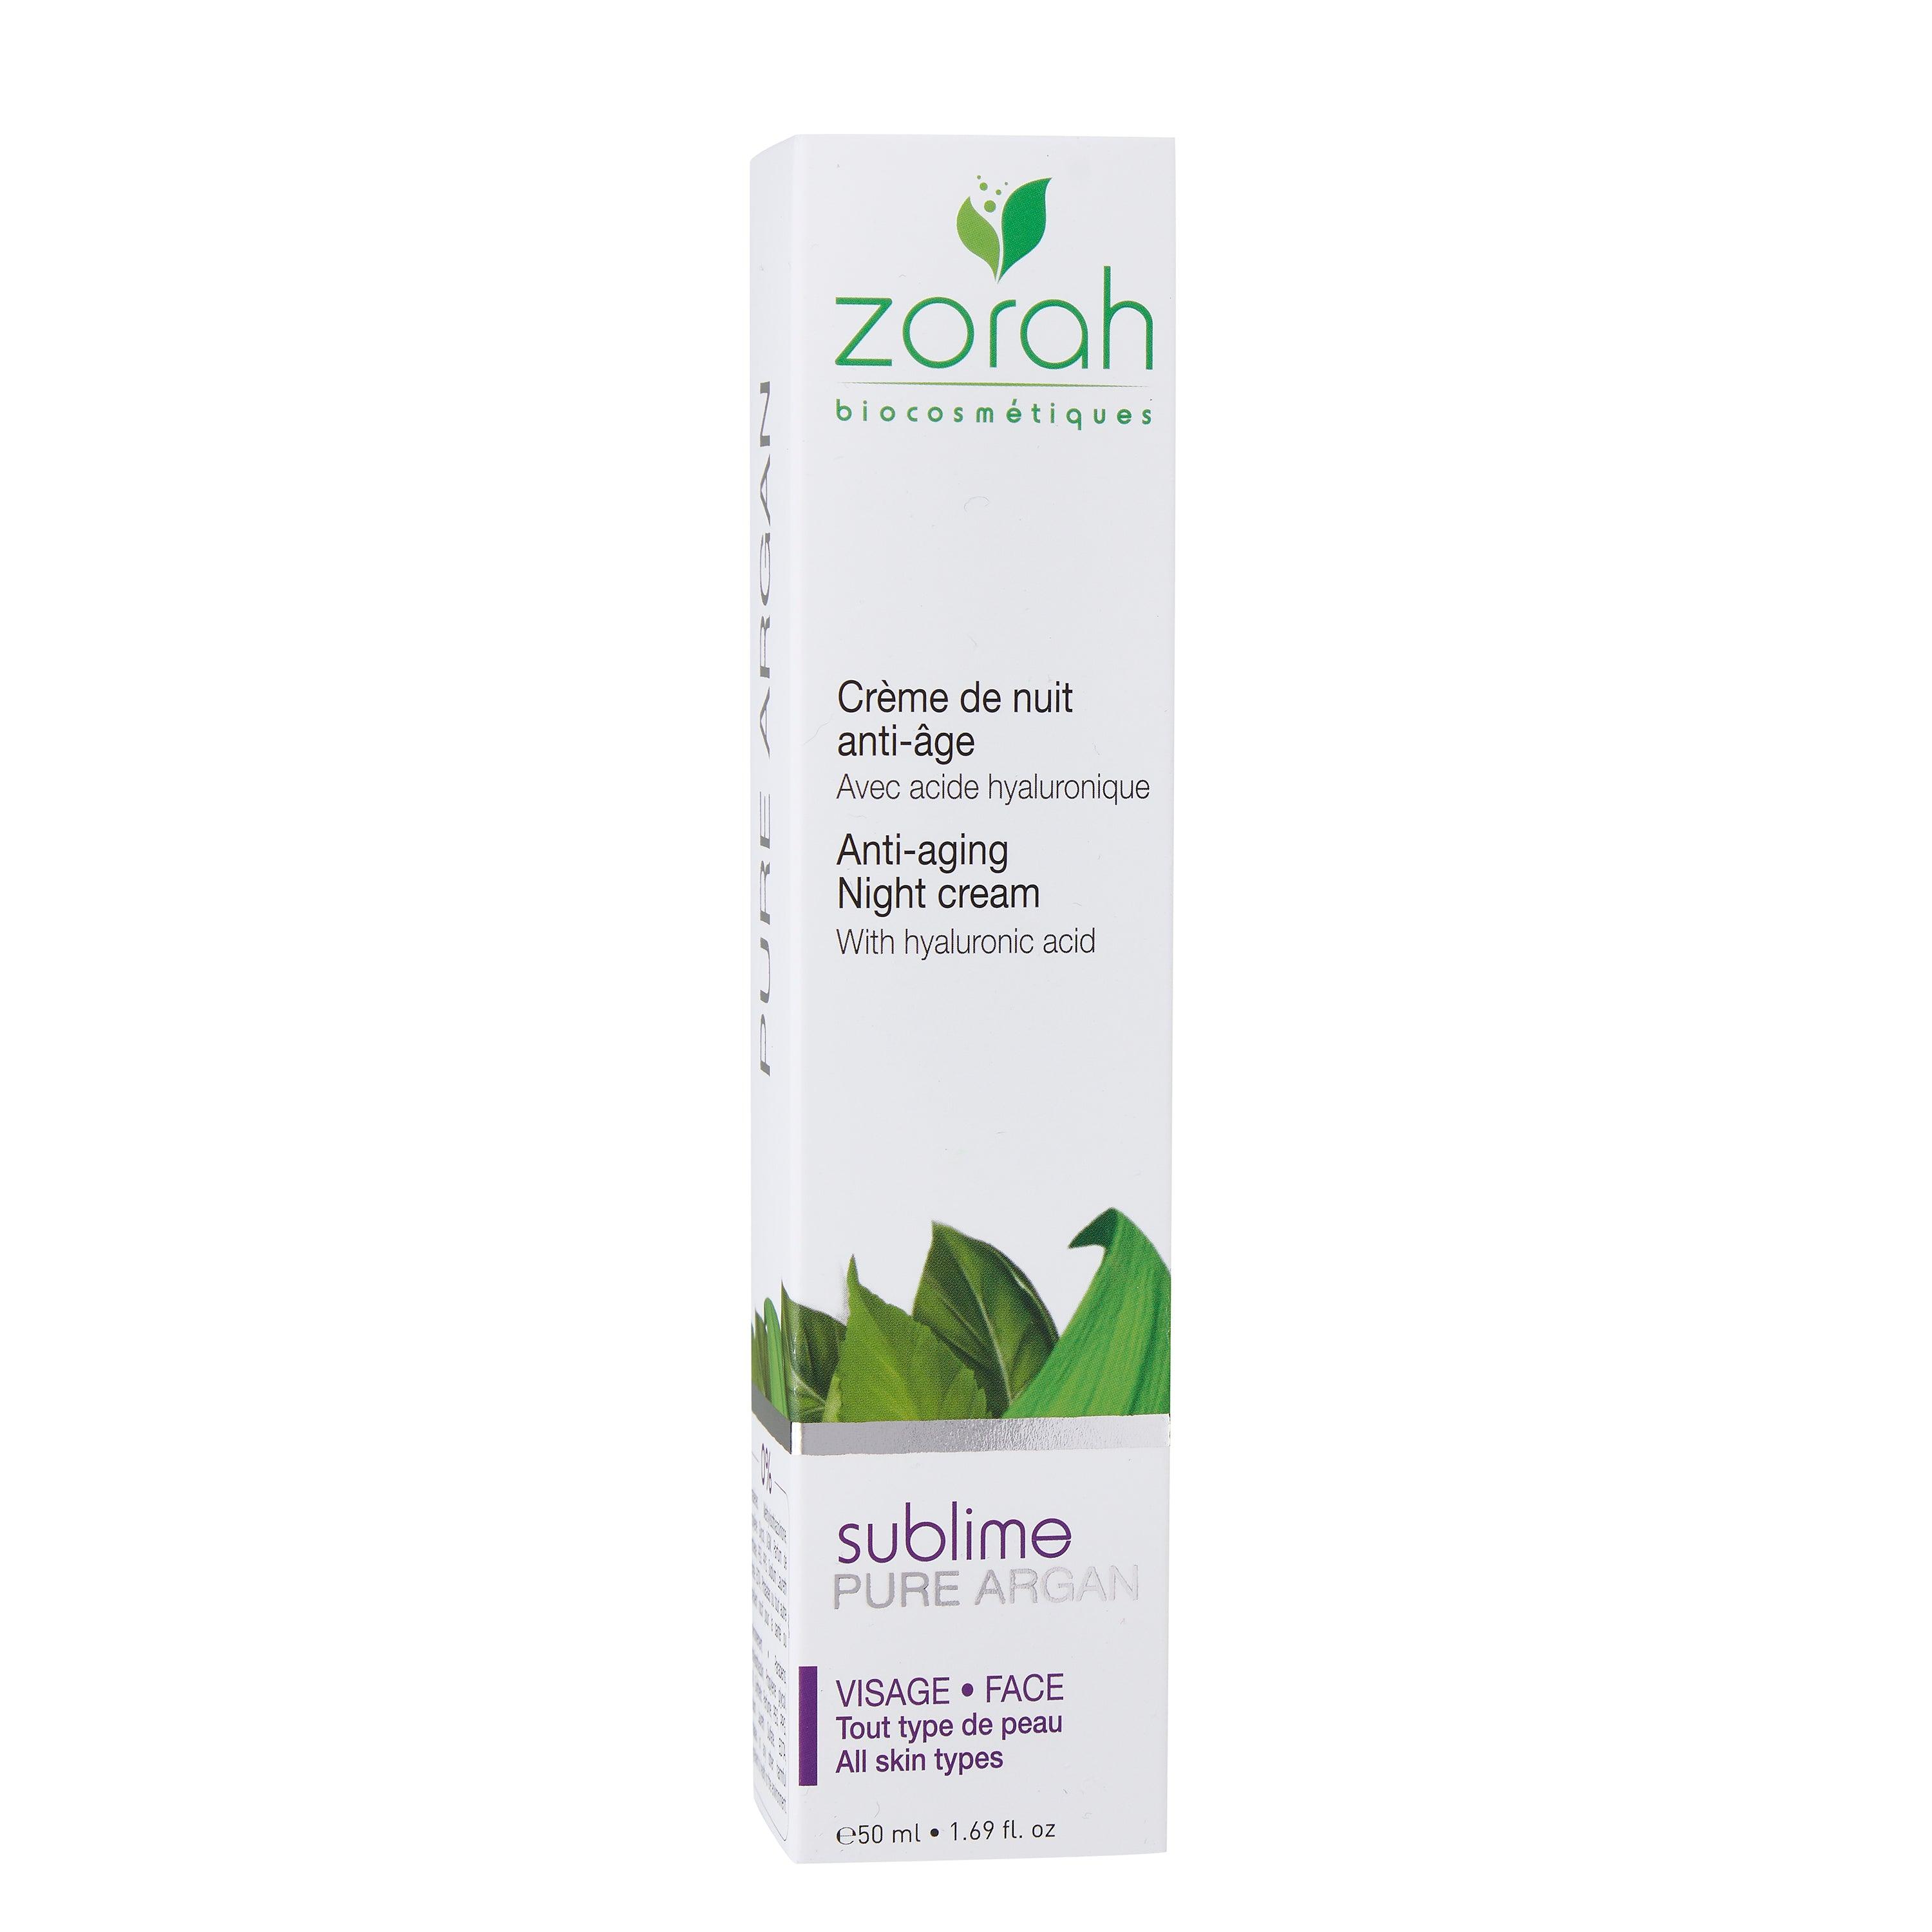 sublime | anti-aging night cream - Zorah biocosmétiques